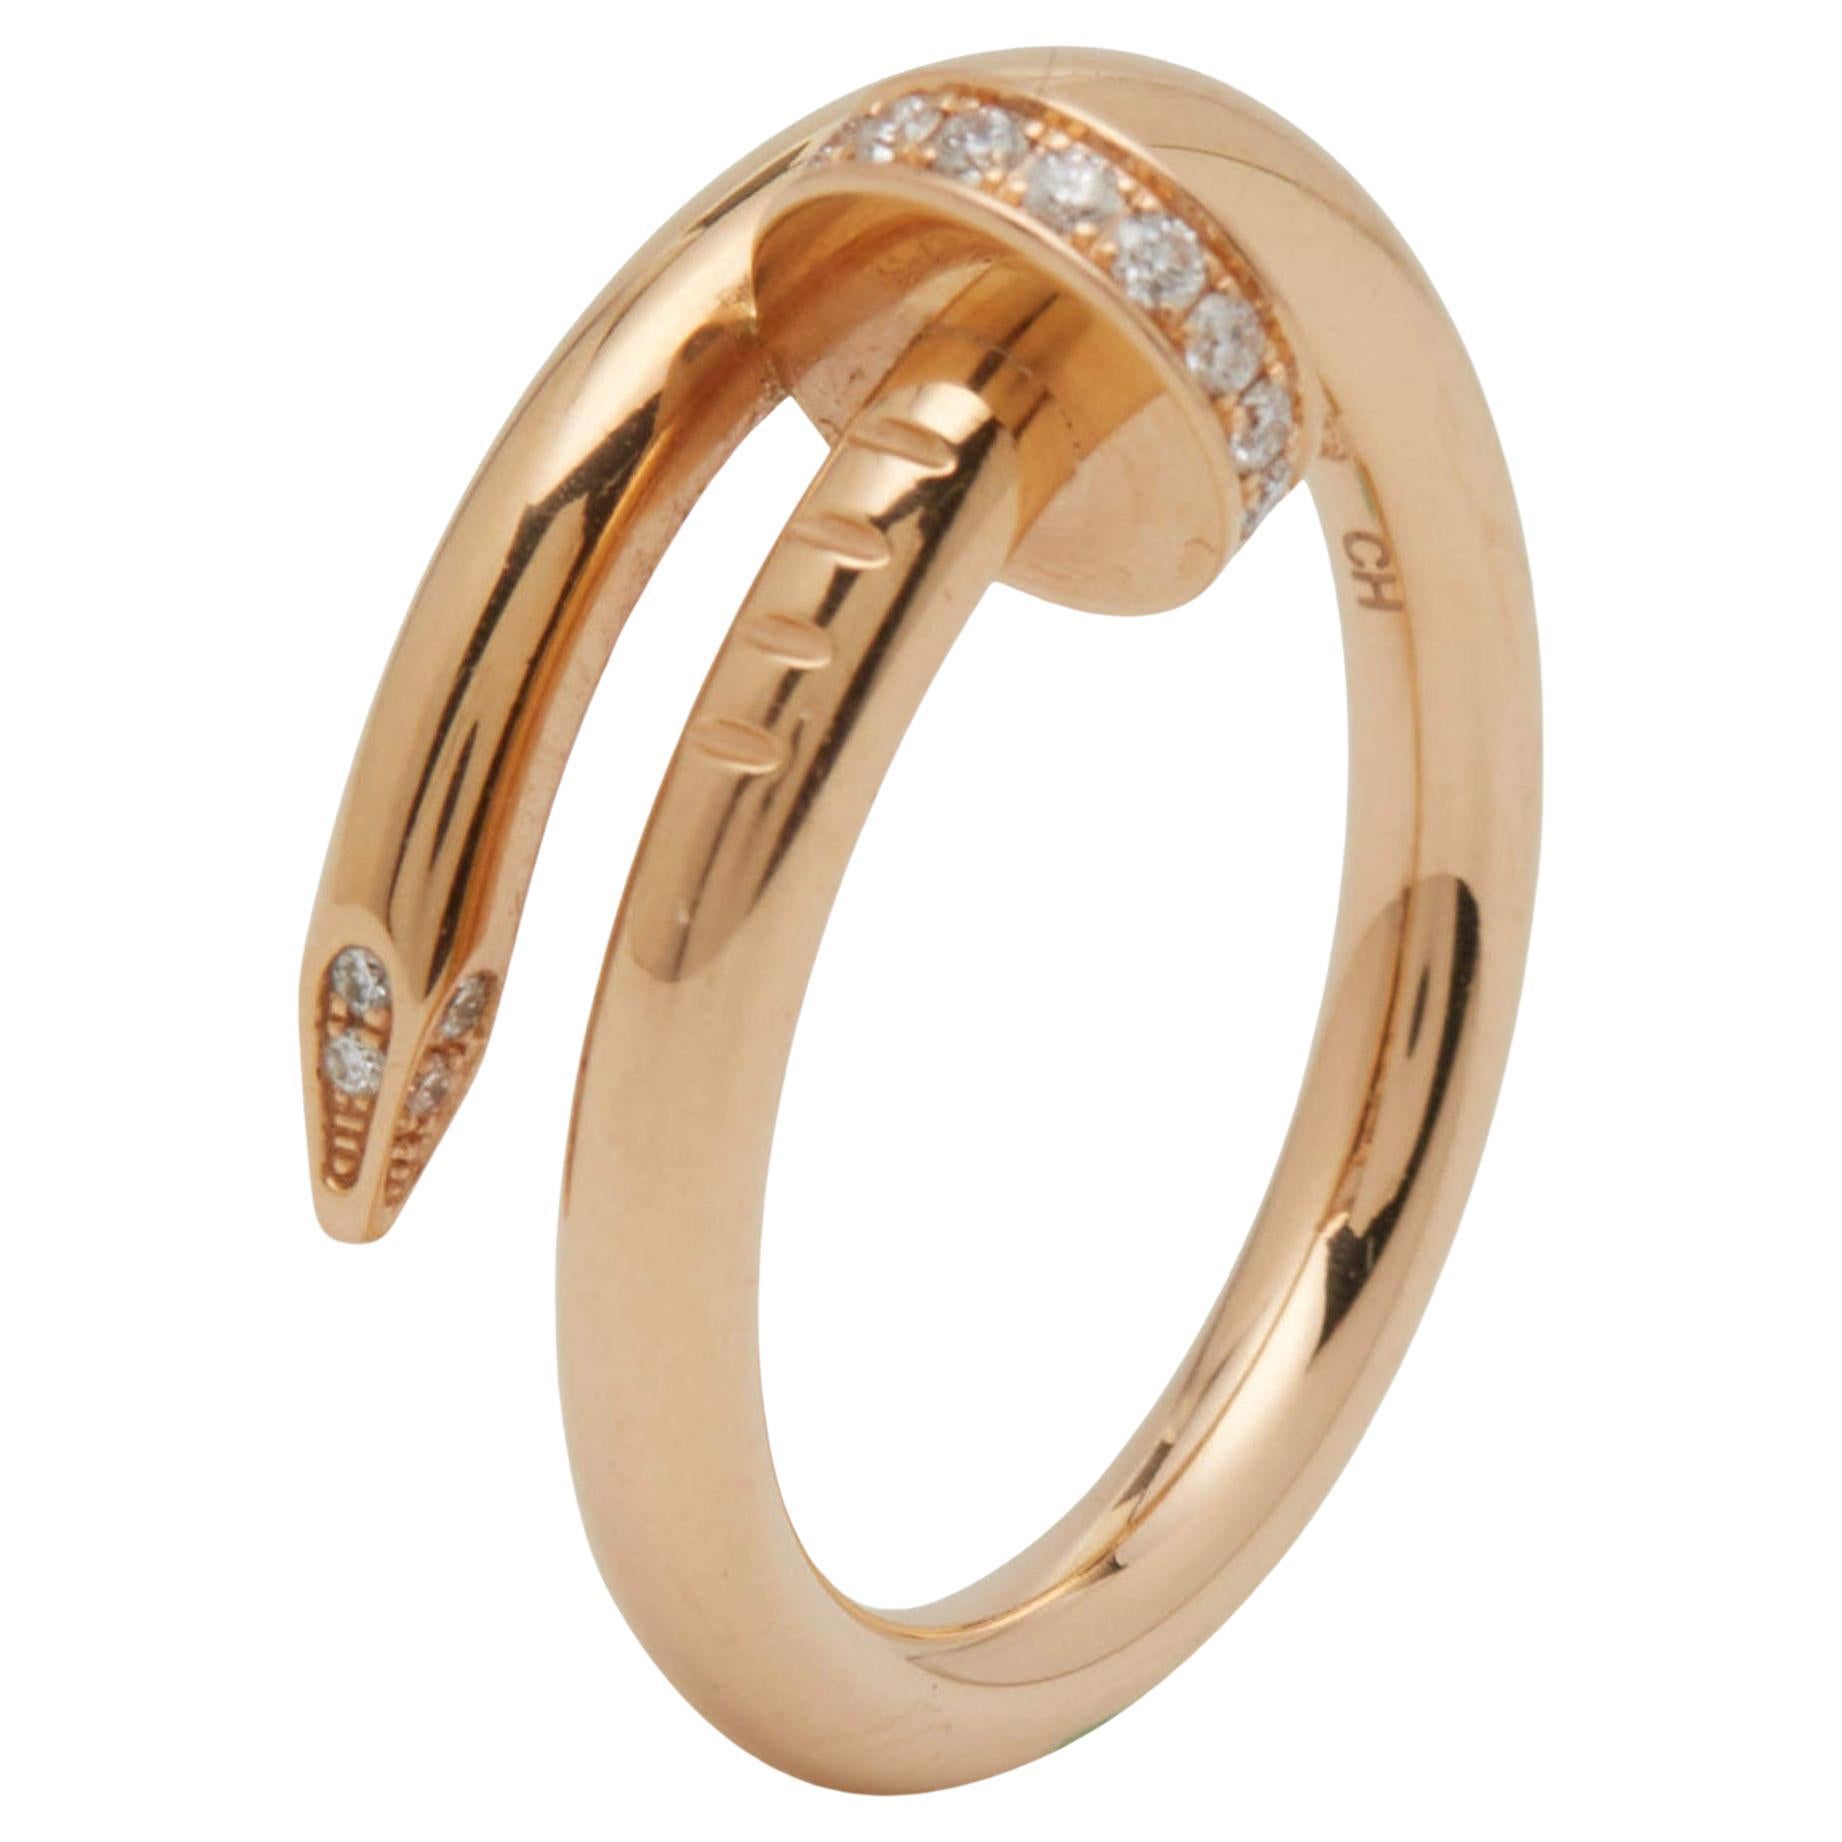 Cartier Juste Un Clou Bague en or rose 18 carats avec diamants, taille 55